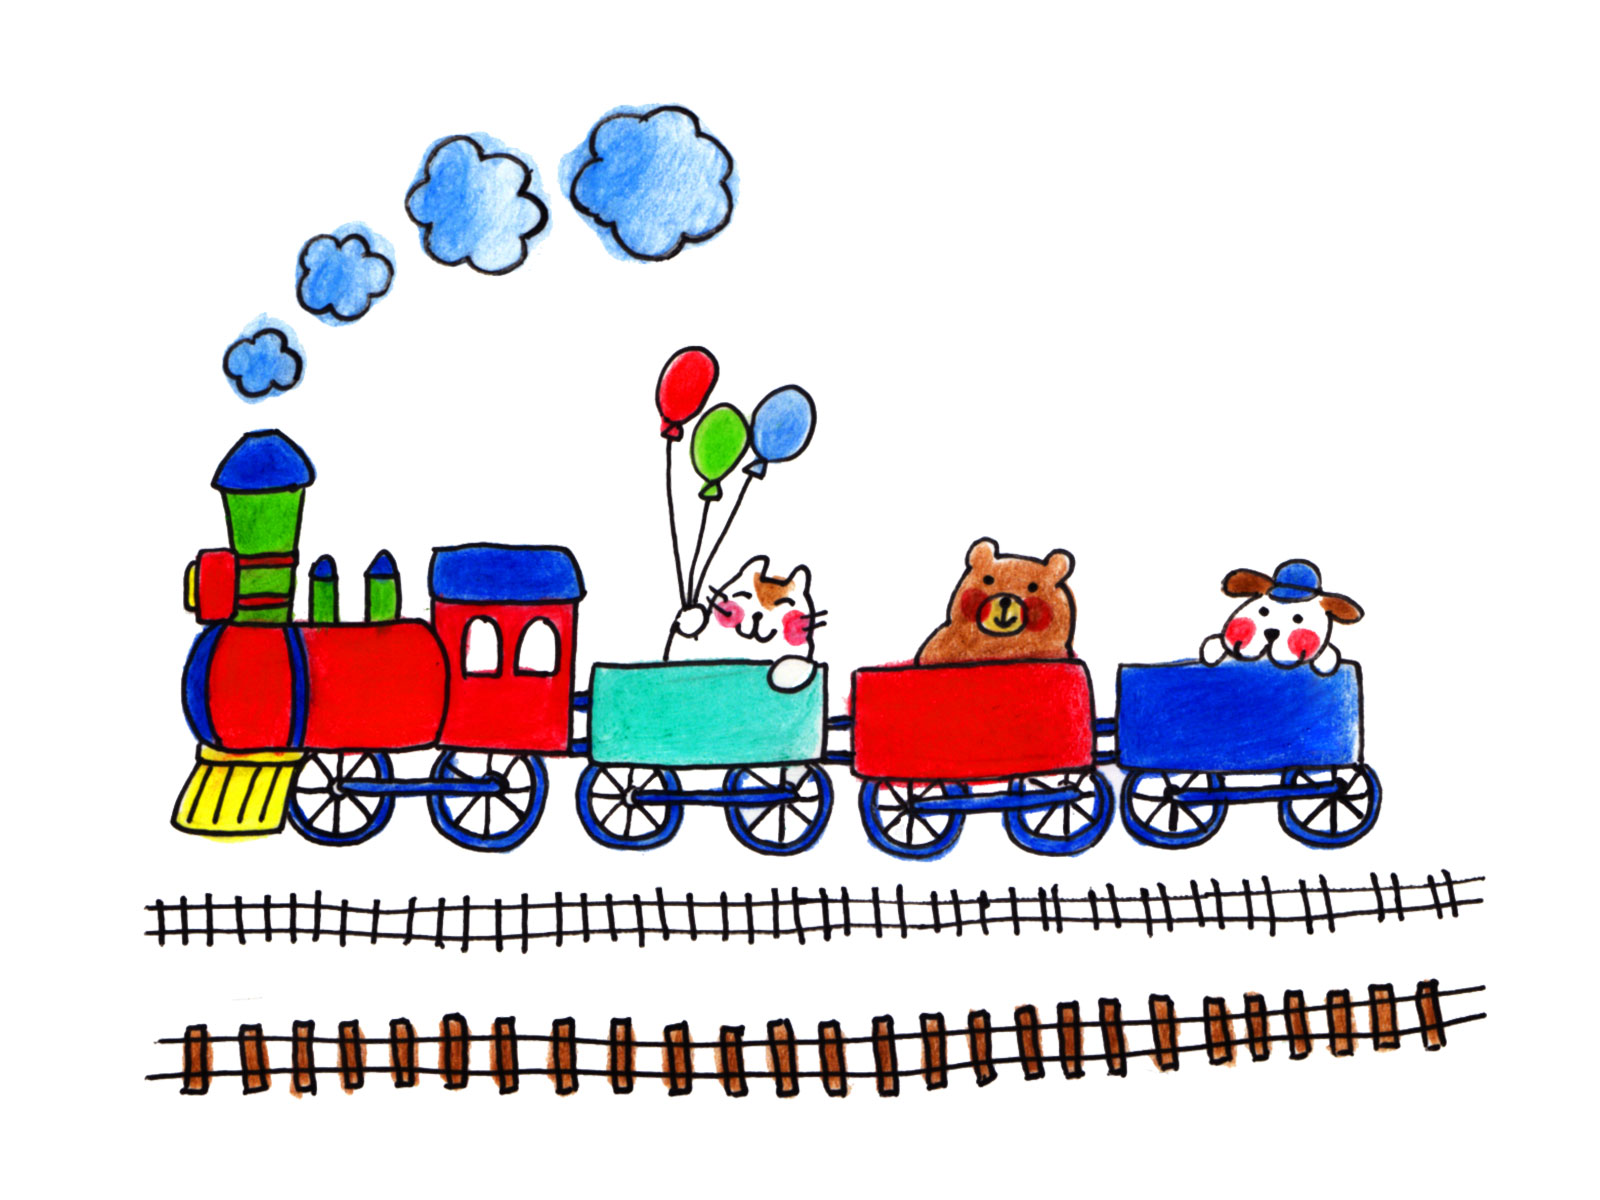 【10月28日・29日】Smile Trainピエリ号(ハロウィンバージョン)が発車！